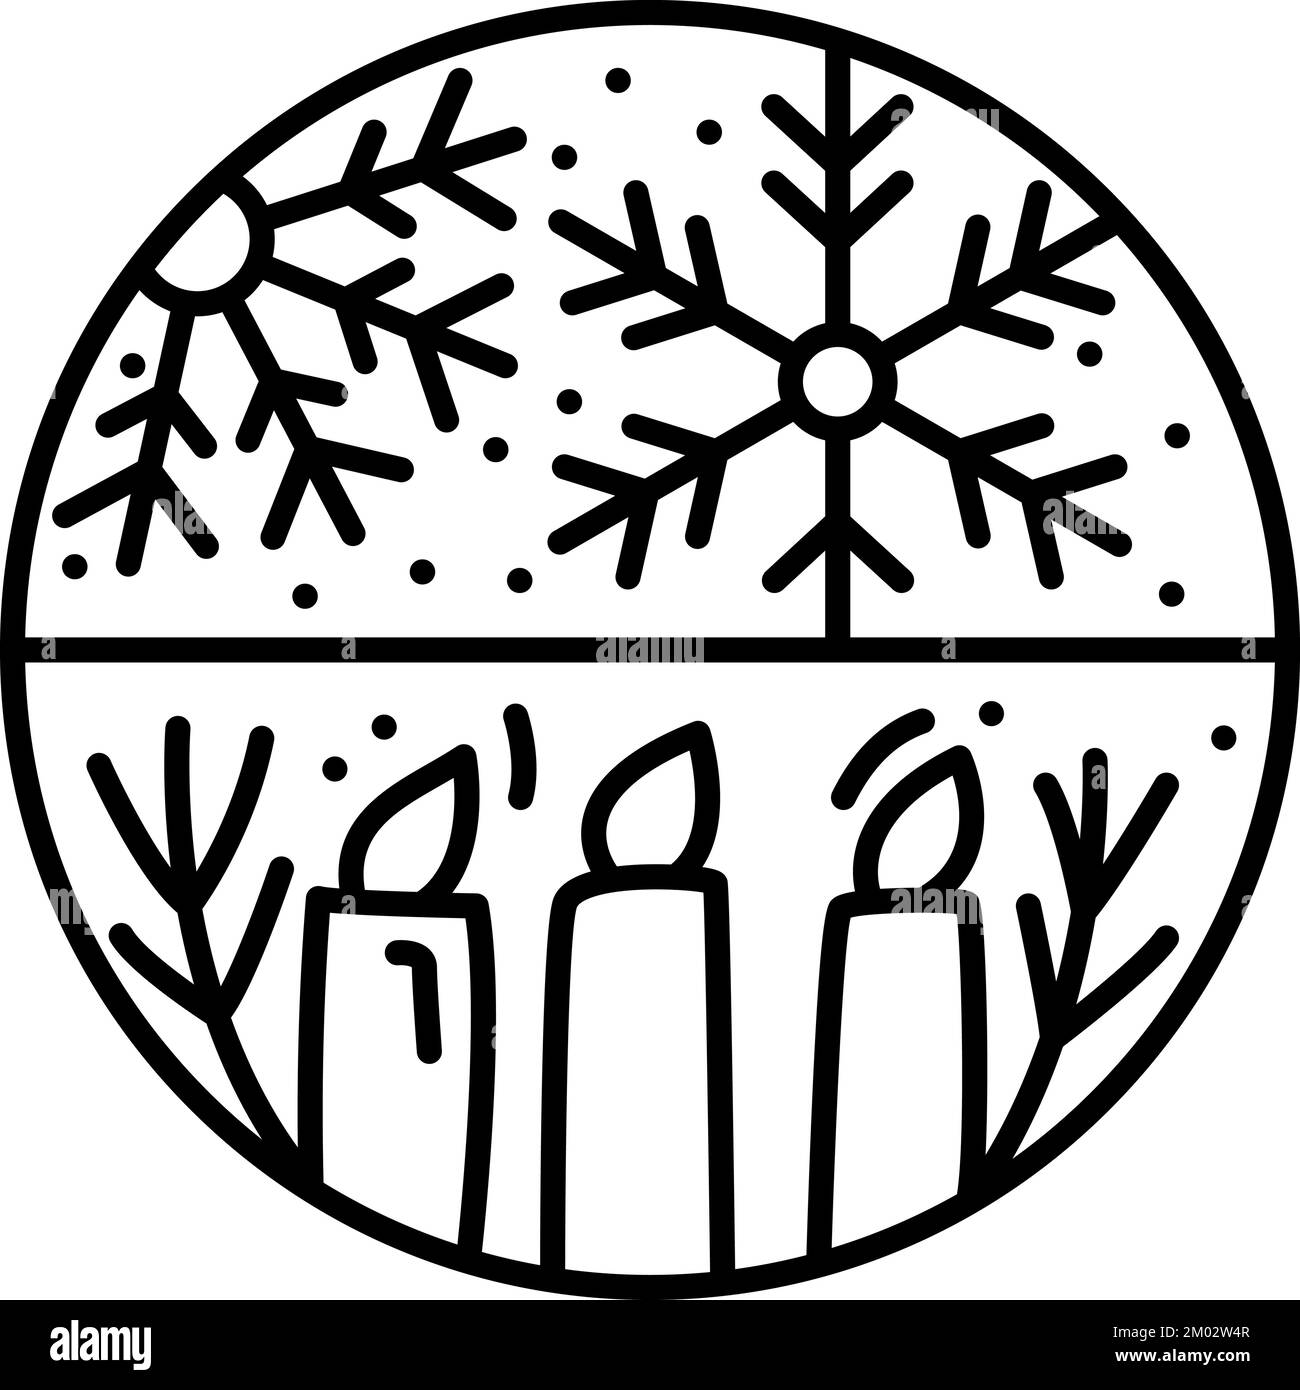 Logotipo de Navidad composición de adviento copos de nieve y velas. Monoline constructor vector de invierno dibujado a mano en dos marcos semirredondos para tarjeta de felicitación Ilustración del Vector